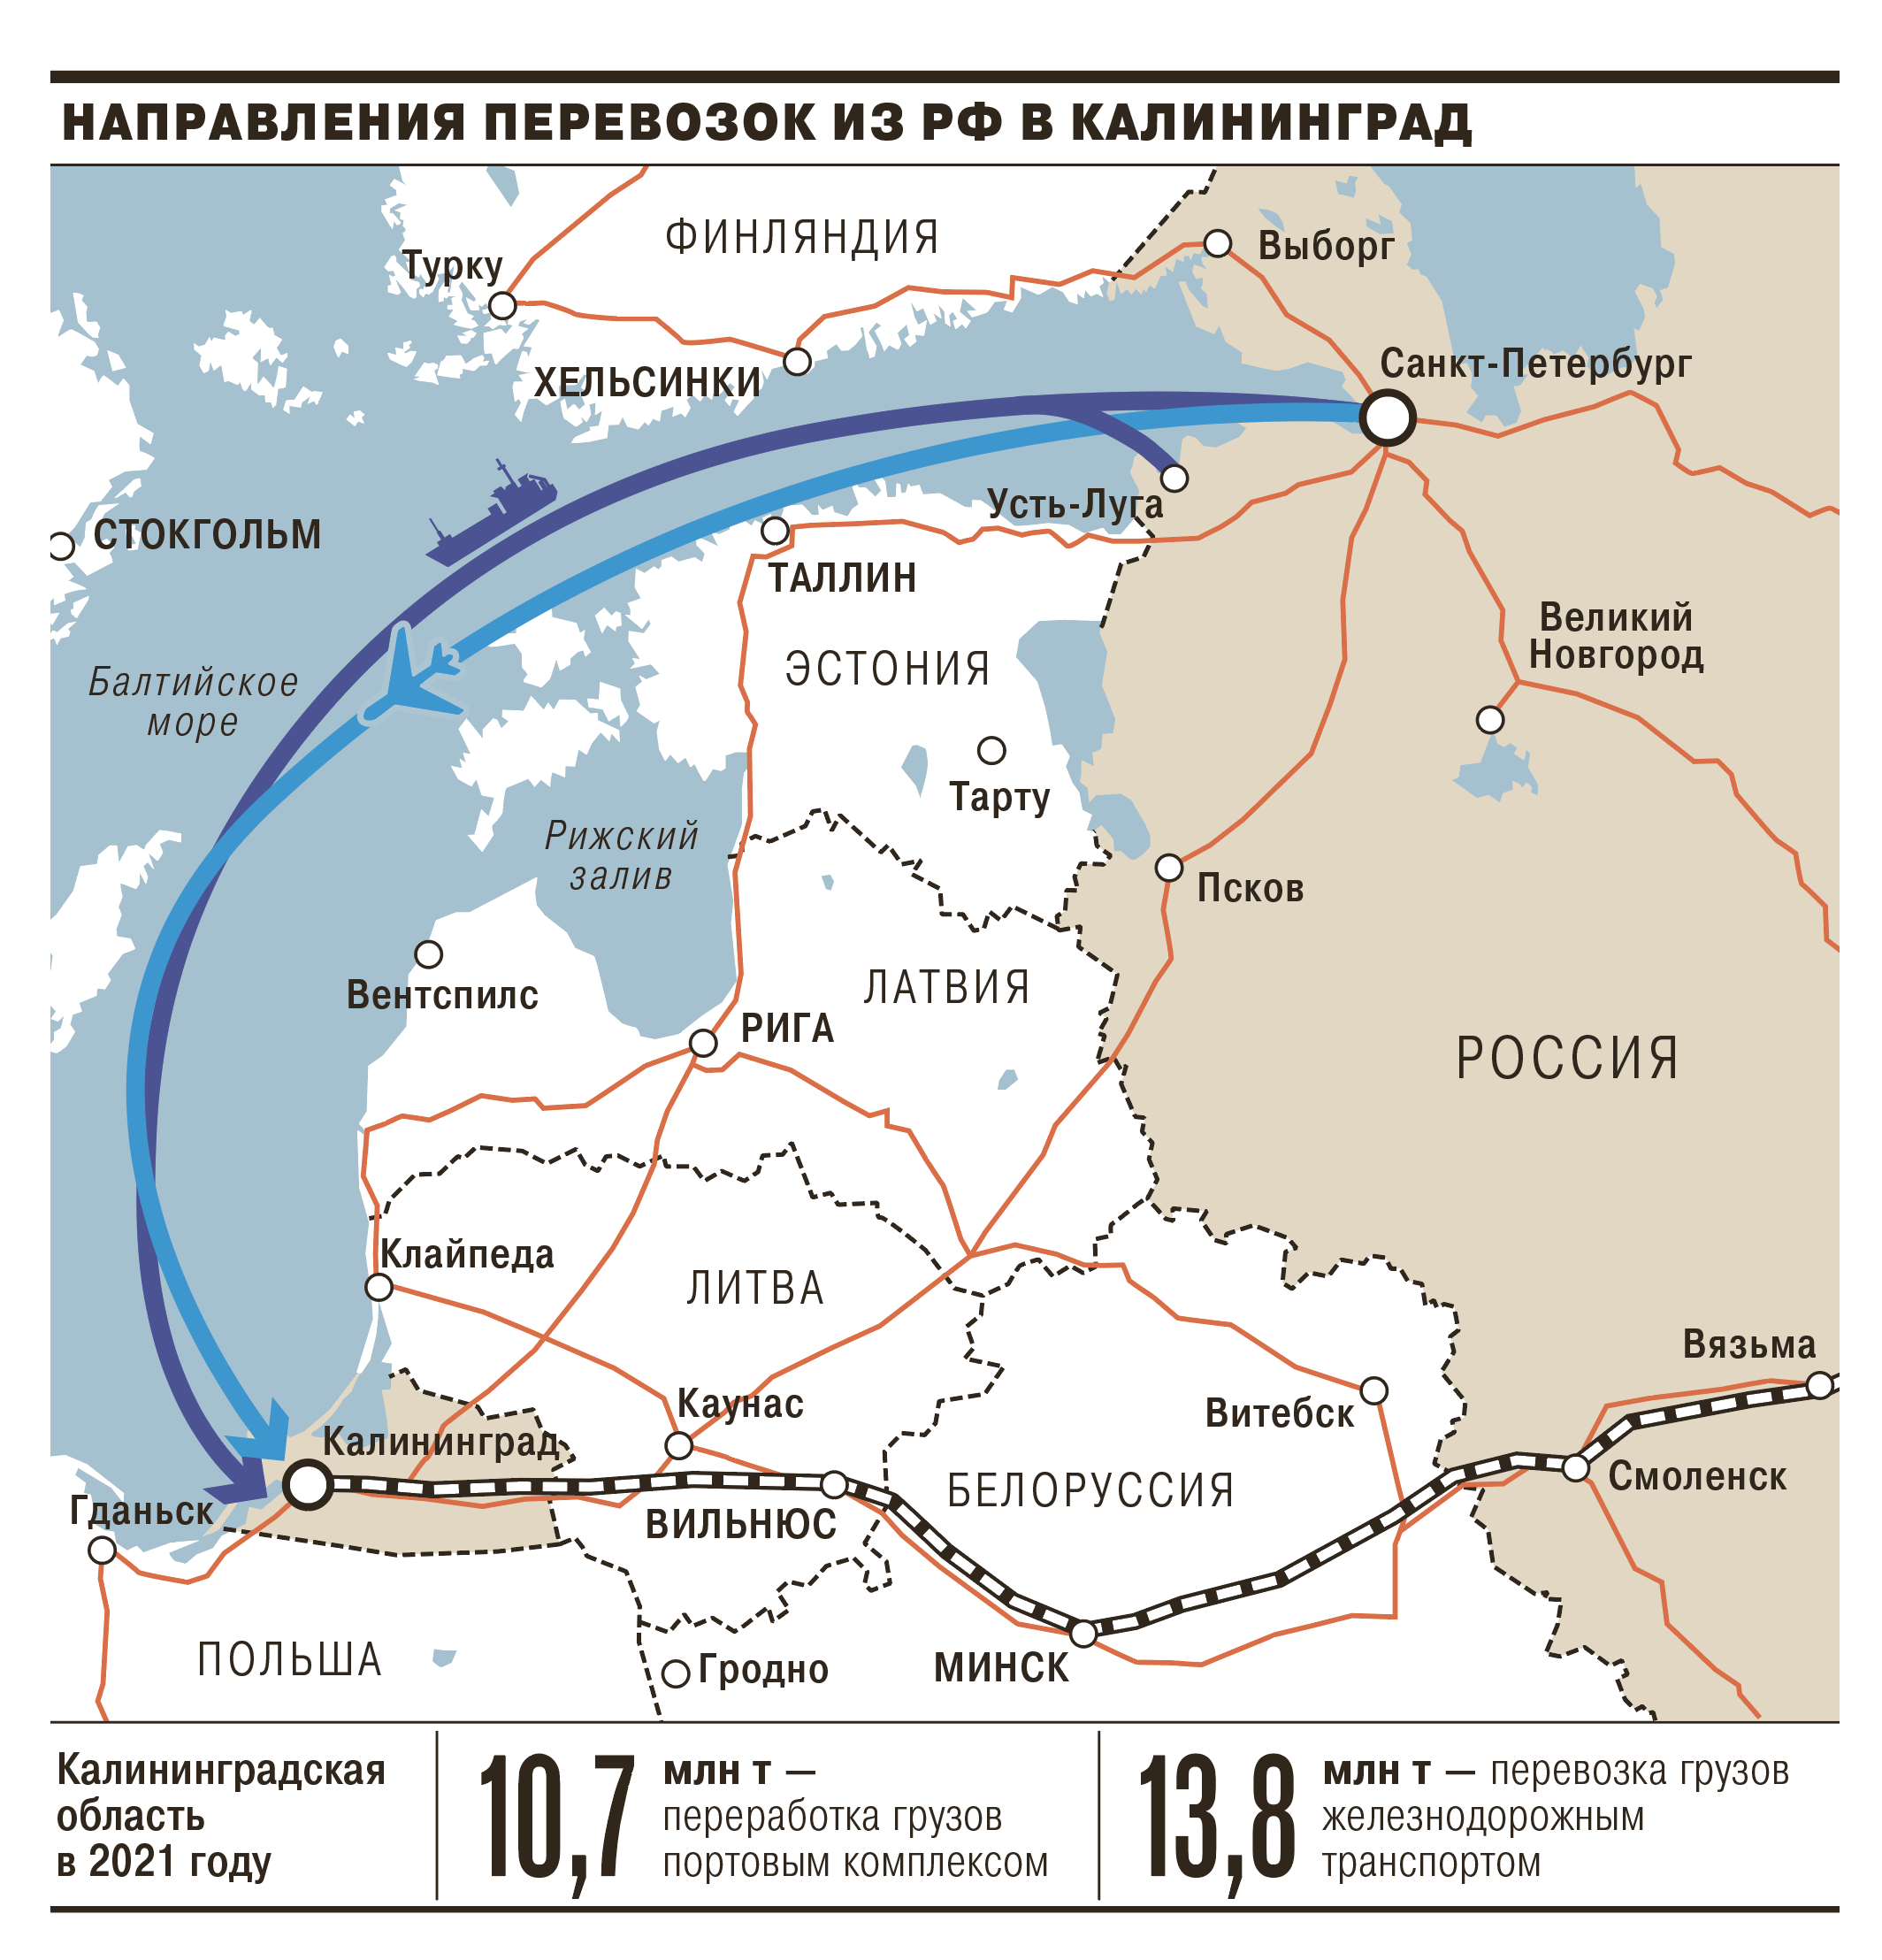 Направления переводок из основной части России в Калининградскую область